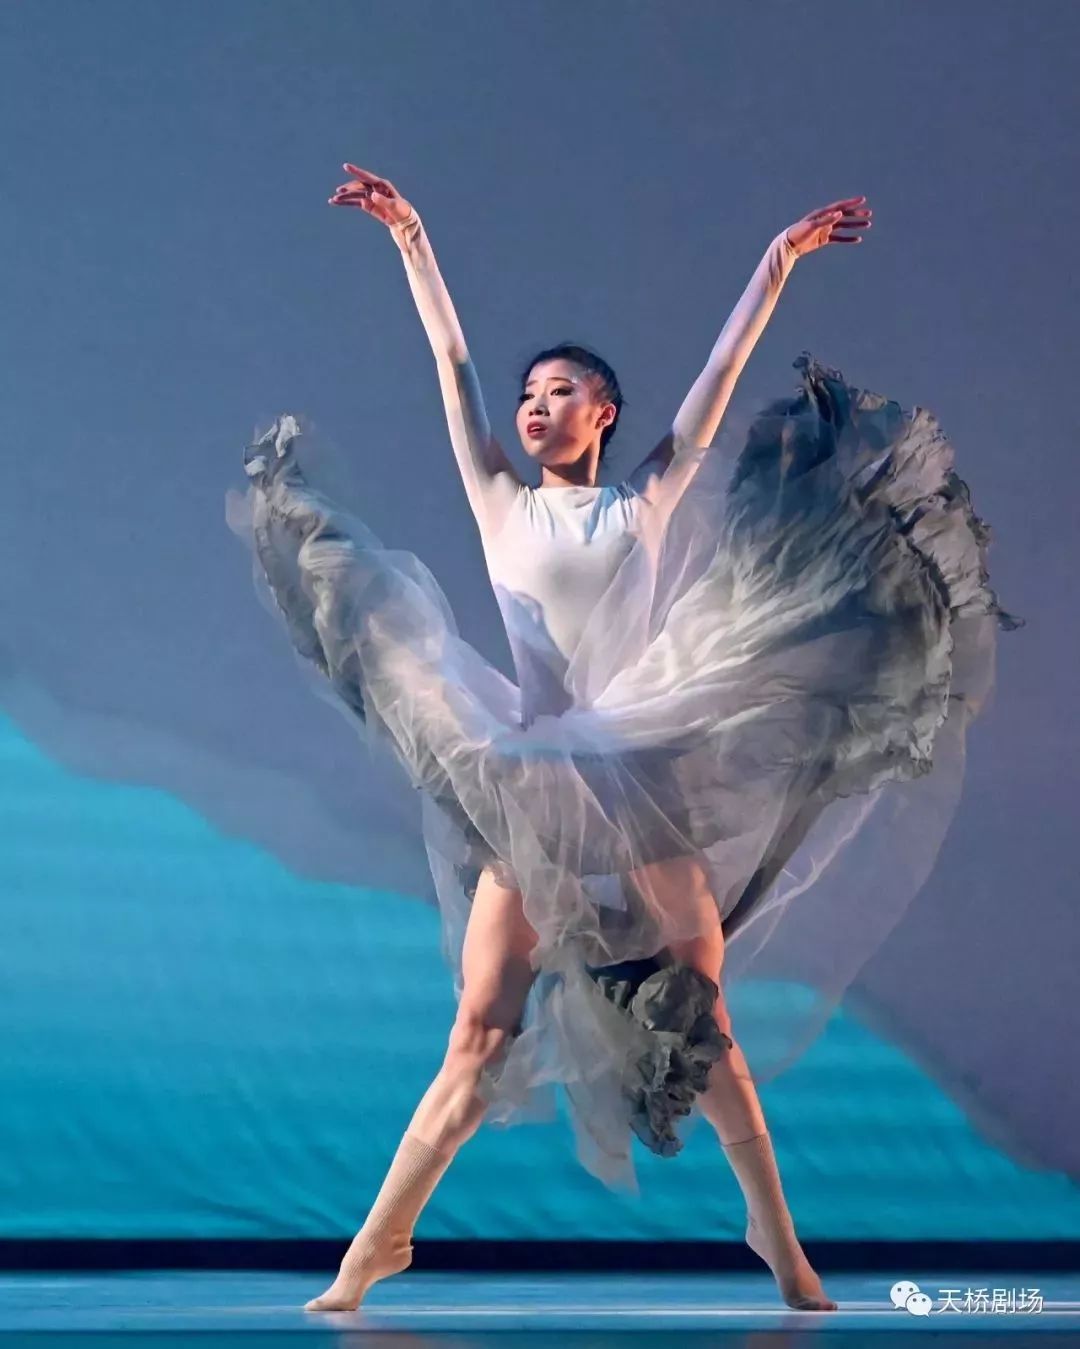 王媛媛:我们把所有的青春,爱和感受,献给了北京当代芭蕾舞团